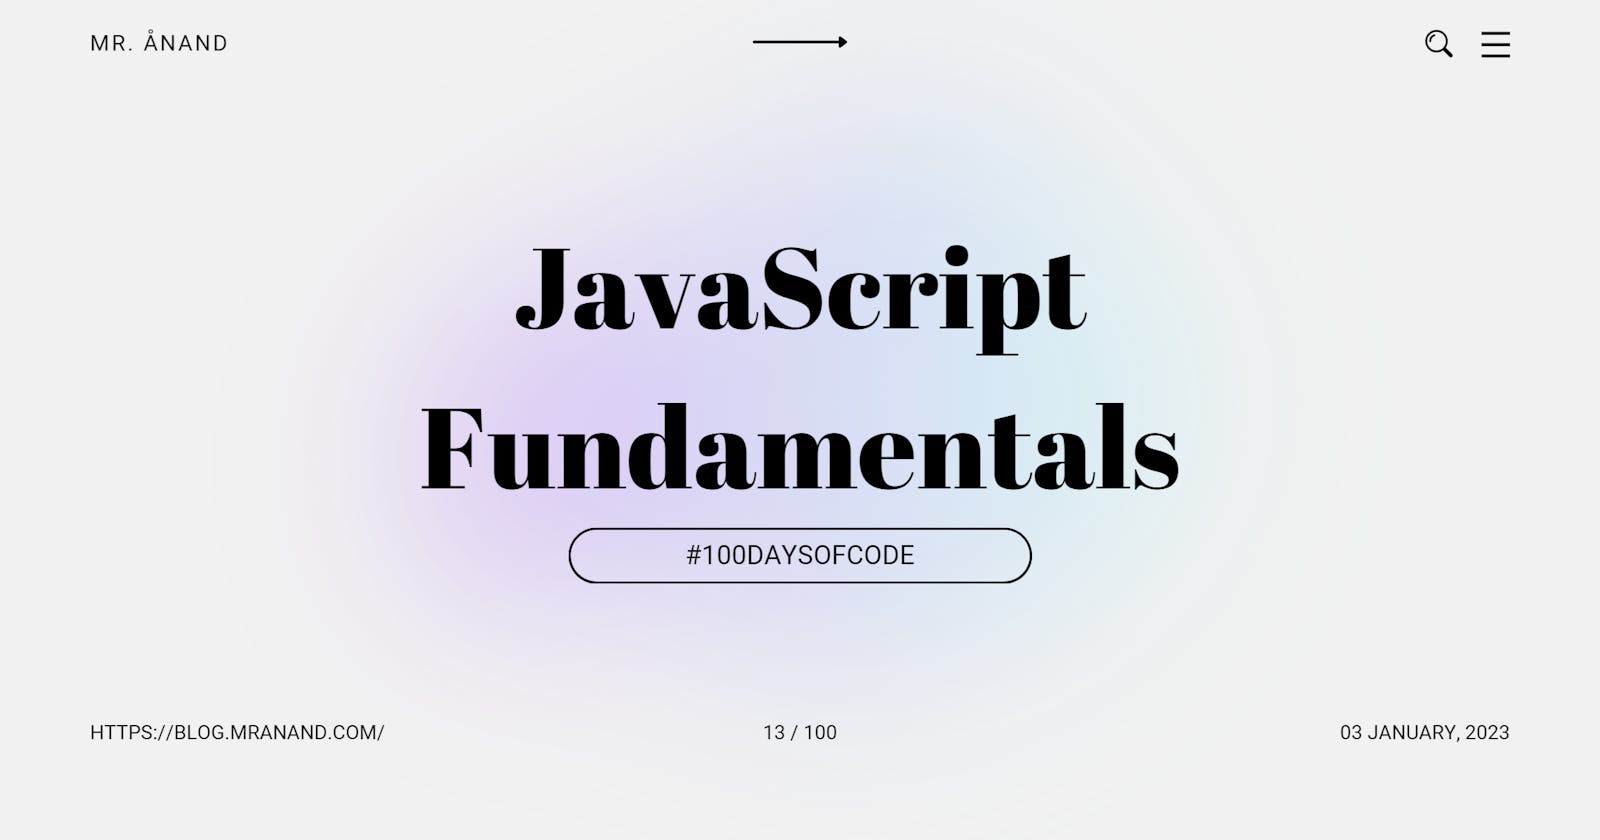 JavaScript Fundamentals: Objects